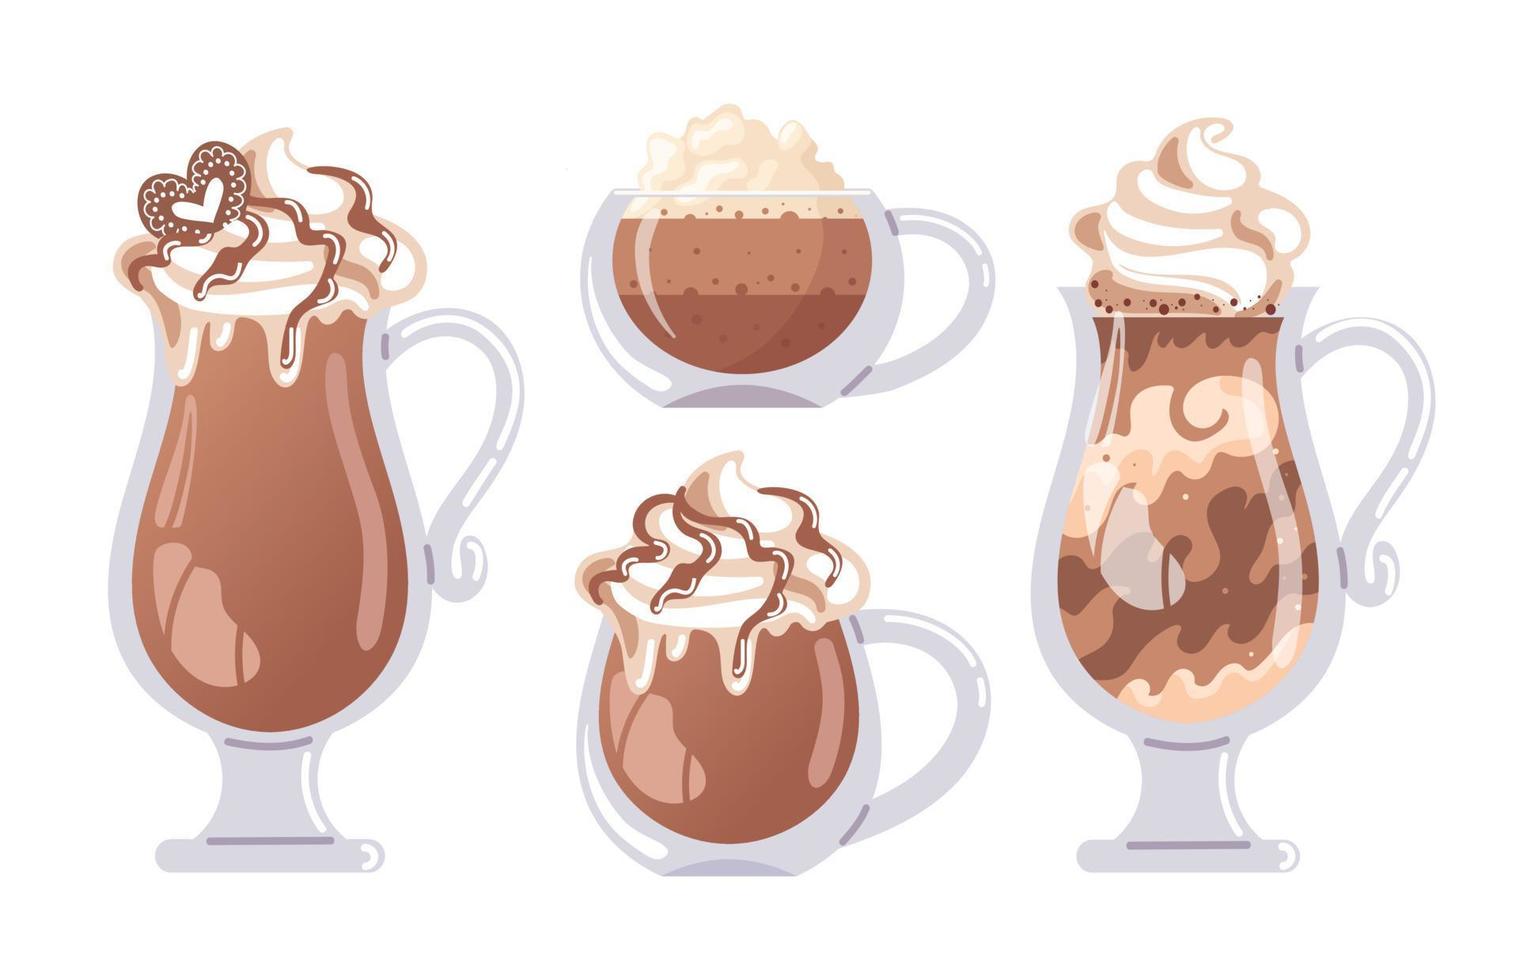 koffie kop set. cappuccino, latte, glasplaten en mokka. heet chocola in een glas, geslagen room. vector voedsel illustratie voor menu, cafe, ansichtkaart, sticker